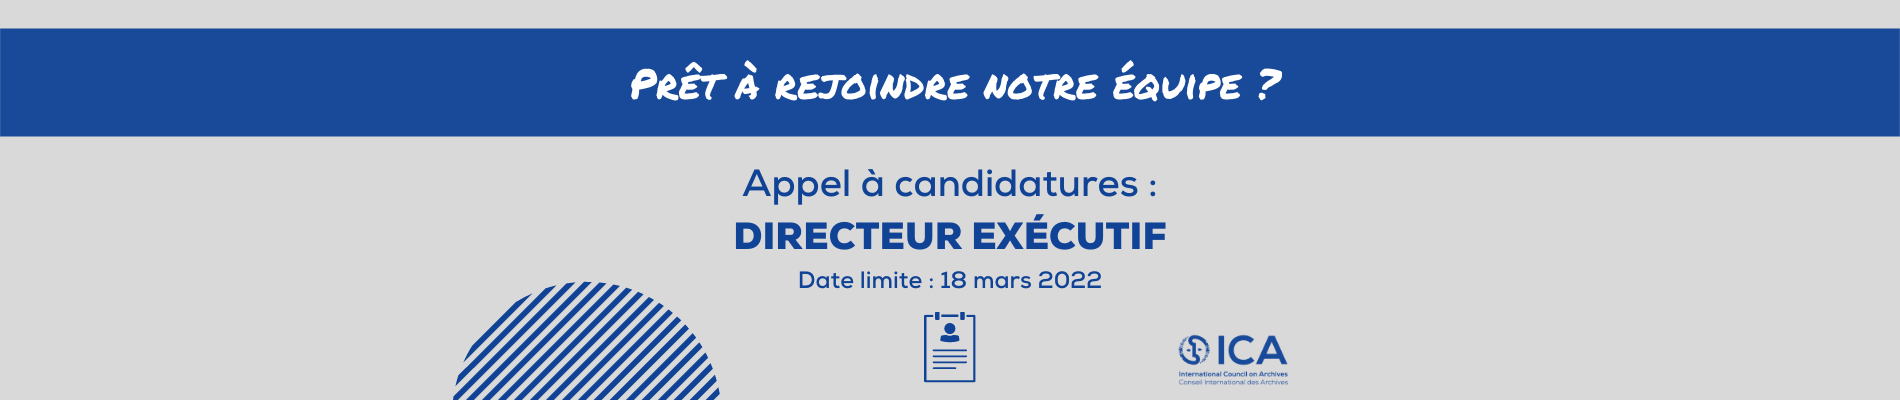 bannercall_for_applications_-_executive_director1900_x_400_en_fr